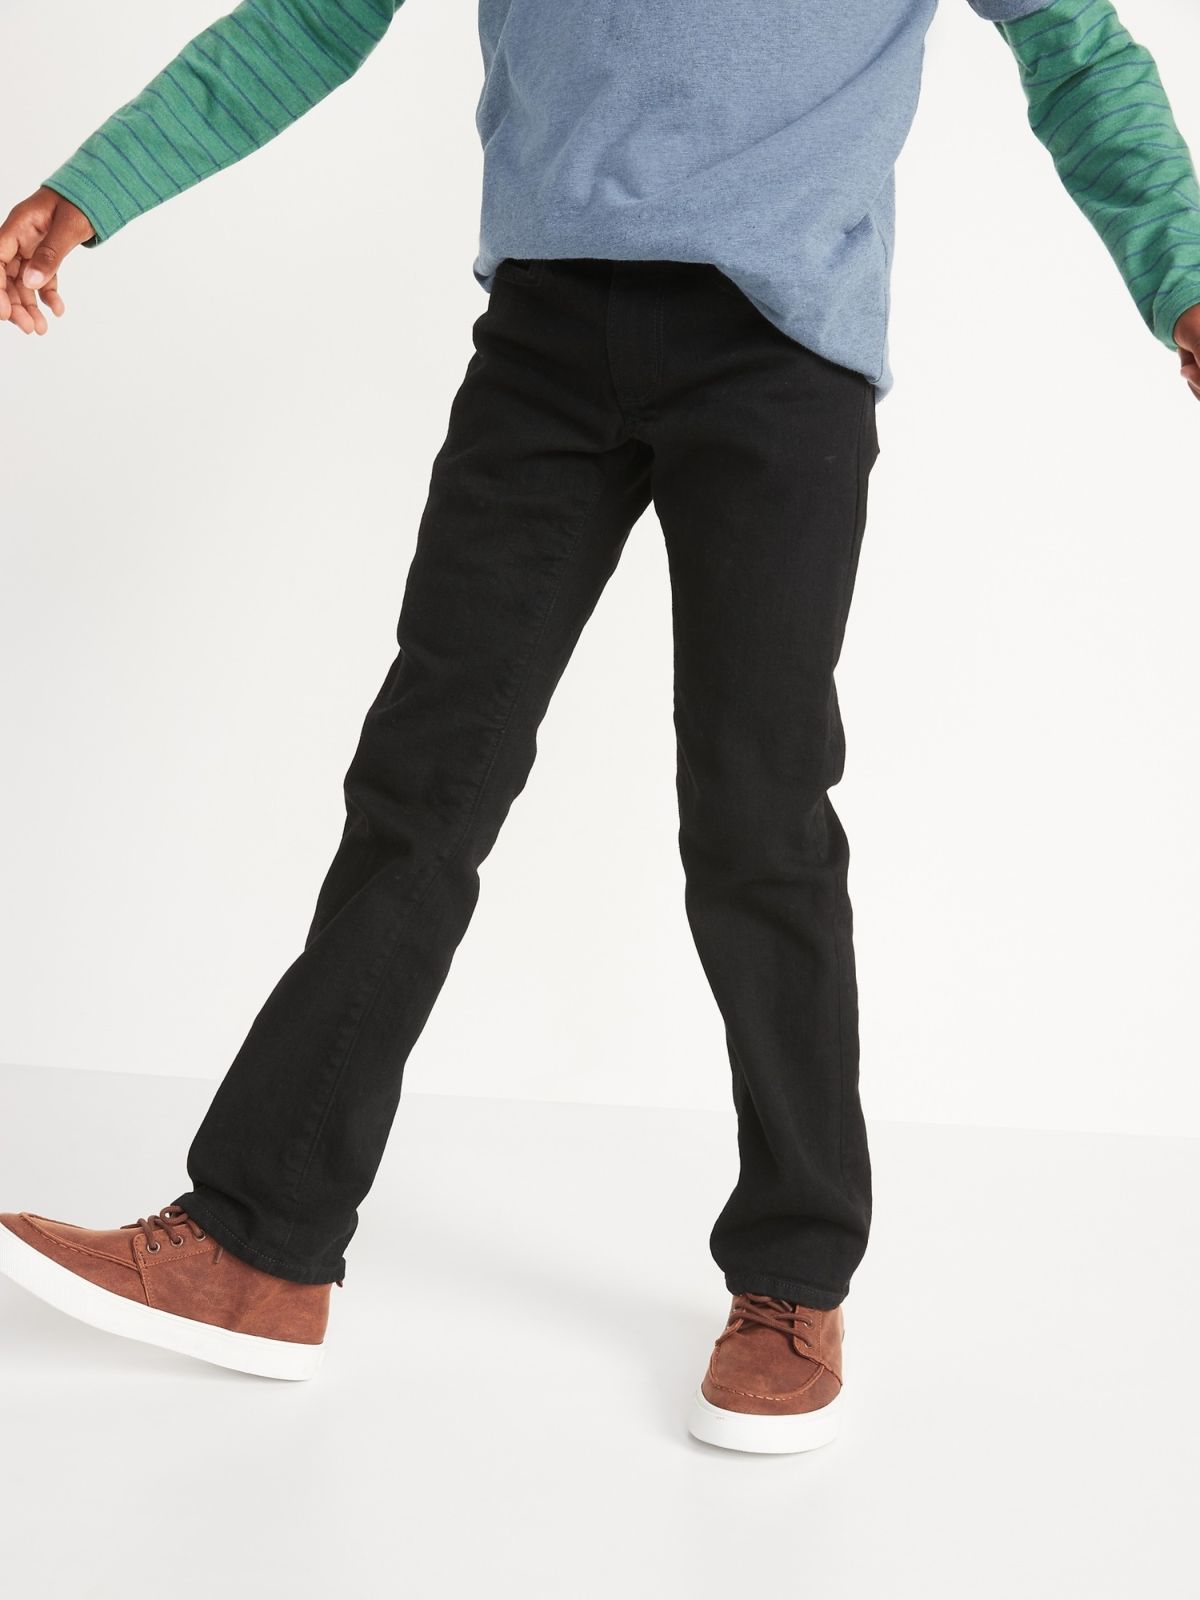  ג'ינס בגזרה ישרה של OLD NAVY